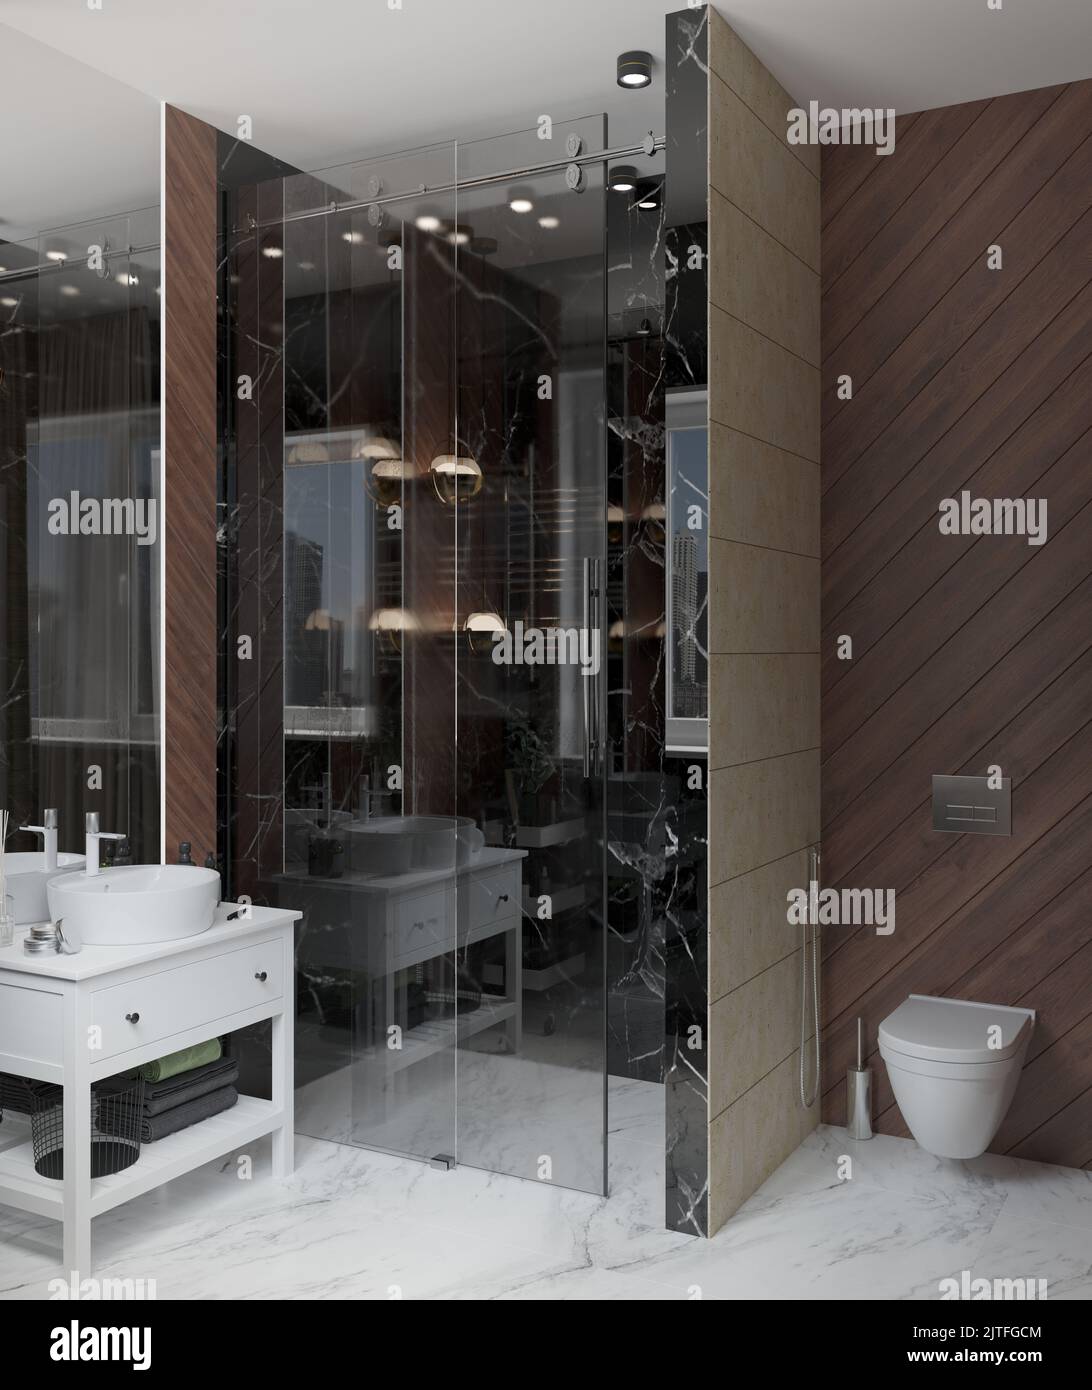 3D Abbildung. Dunkles, modernes Badezimmer mit Toilette und Dusche, Oberflächen aus schwarzem und weißem Marmor, Sandsteinmauerwerk. Raupenlichter, Anhänger, Duschkabine Stockfoto